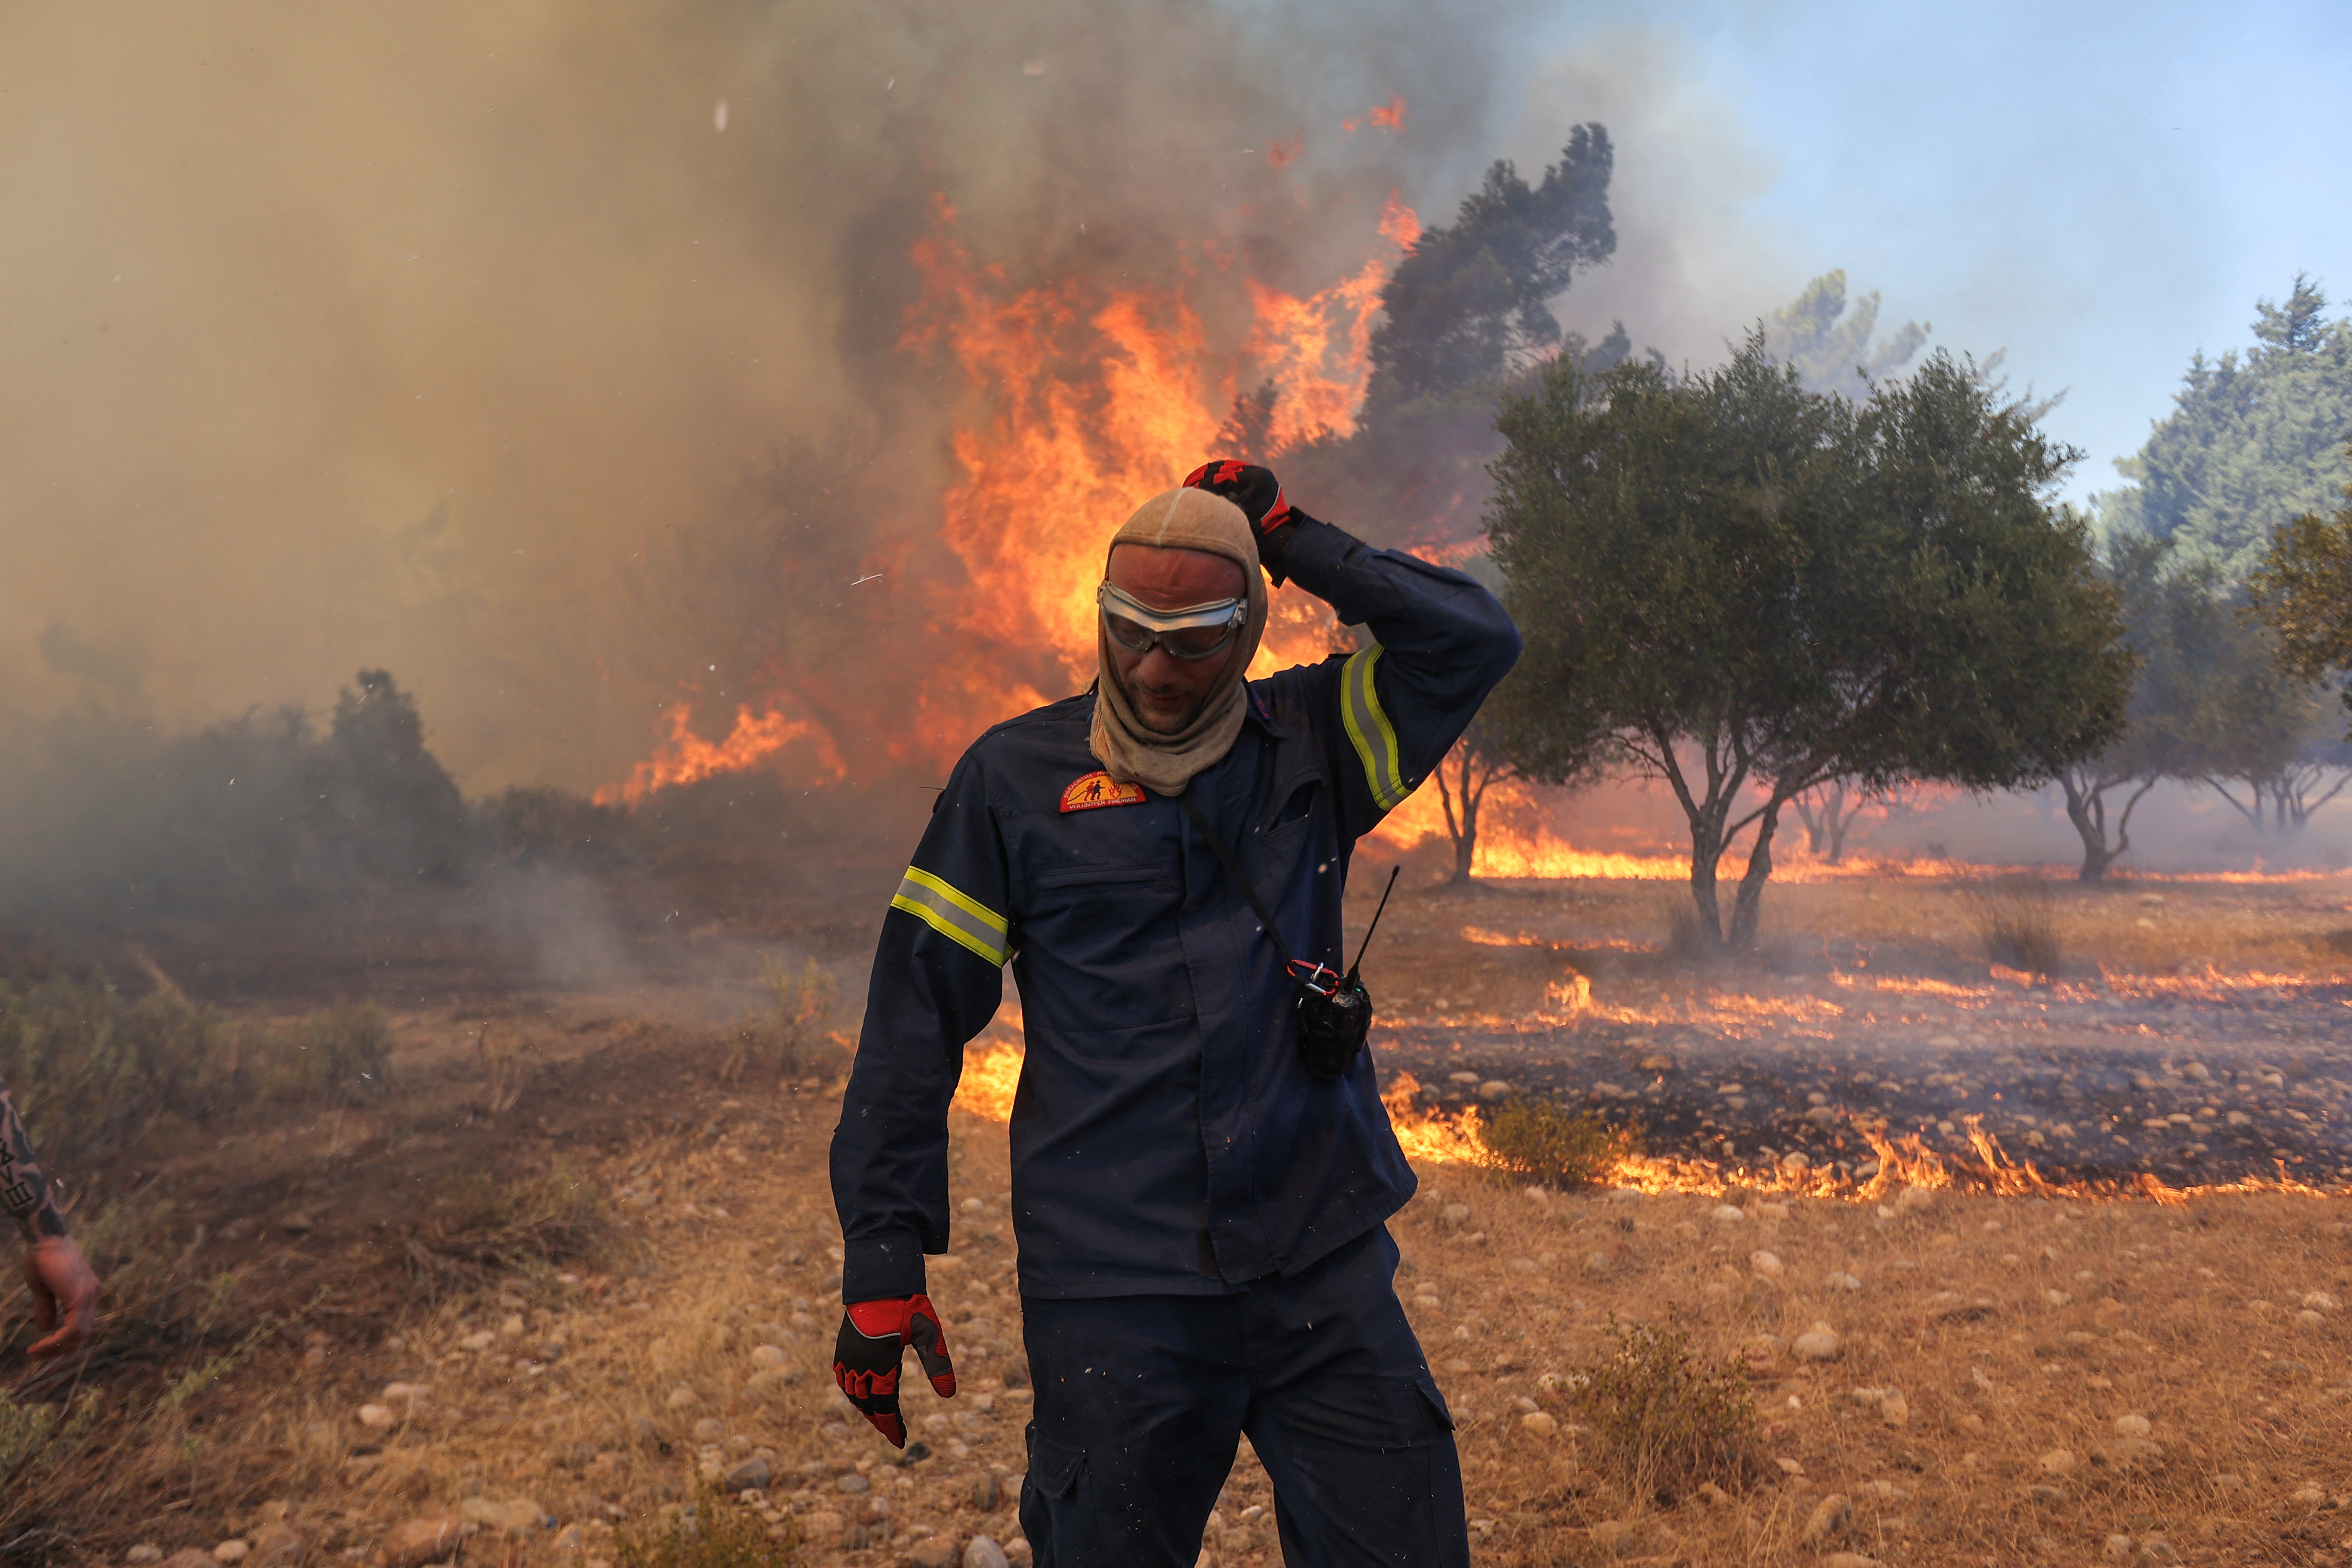 罗德岛瓦蒂村附近野火燃烧，一名消防员走在熊熊燃烧的火焰旁。  /尼古拉斯·伊科诺莫/路透社